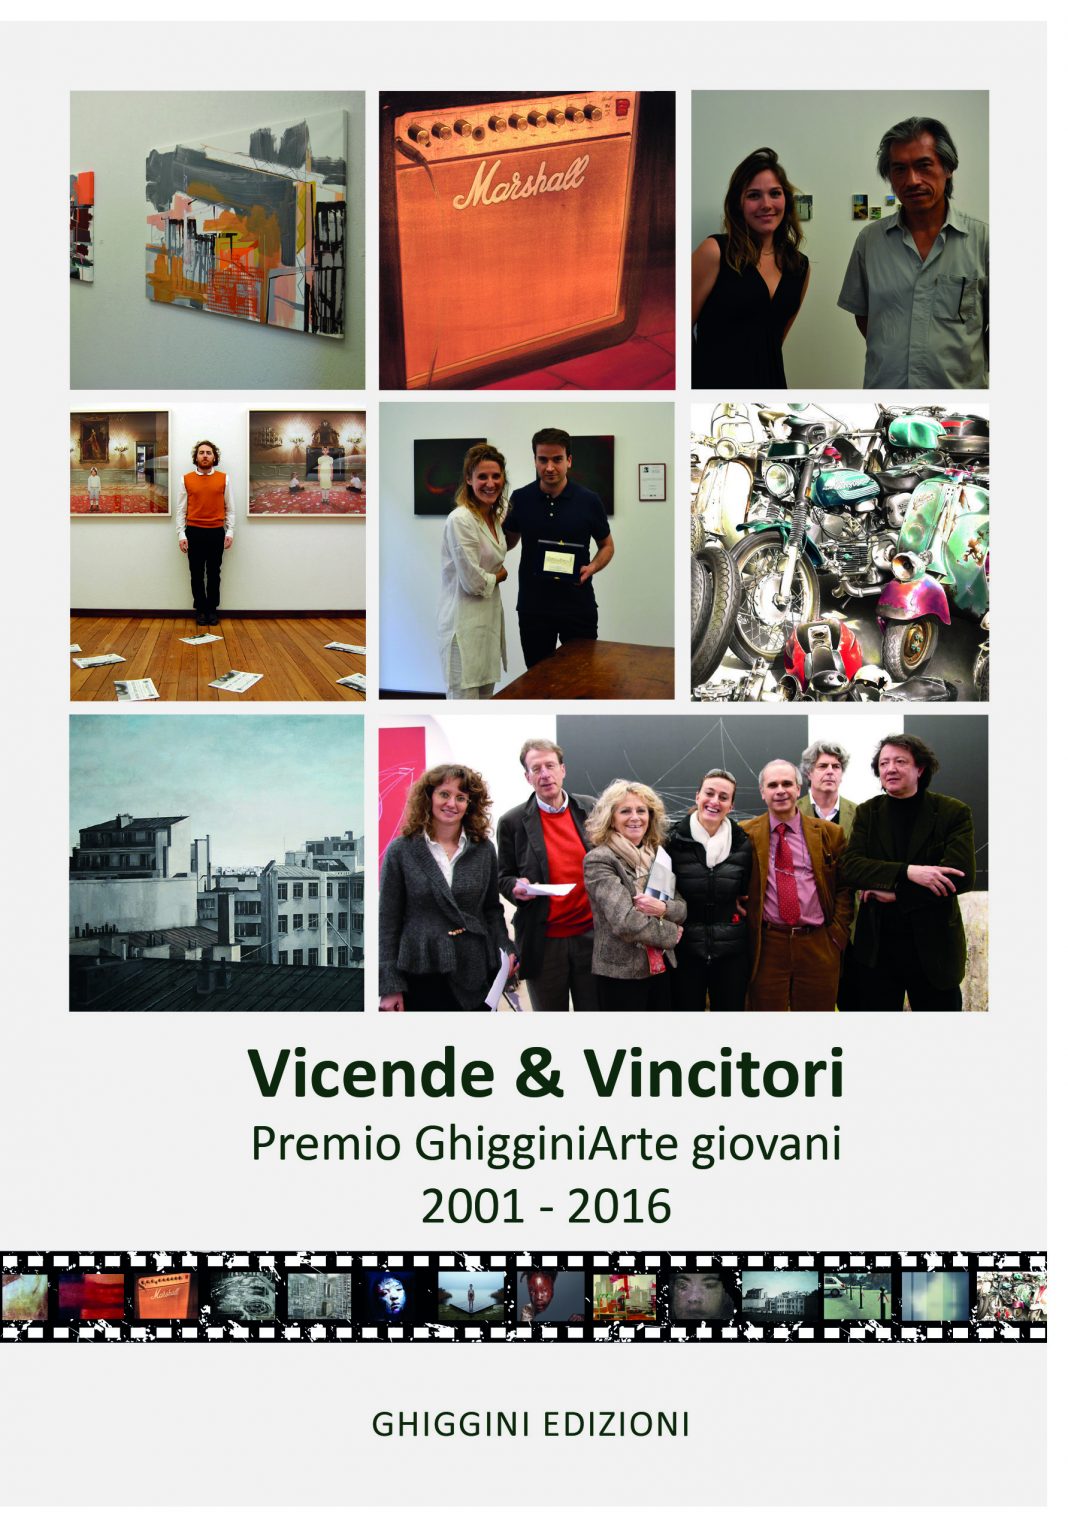 Vicende & Vincitori del Premio GhigginiArte 2001 – 2016https://www.exibart.com/repository/media/eventi/2017/05/vicende-038-vincitori-del-premio-ghigginiarte-2001-8211-2016-1068x1528.jpg